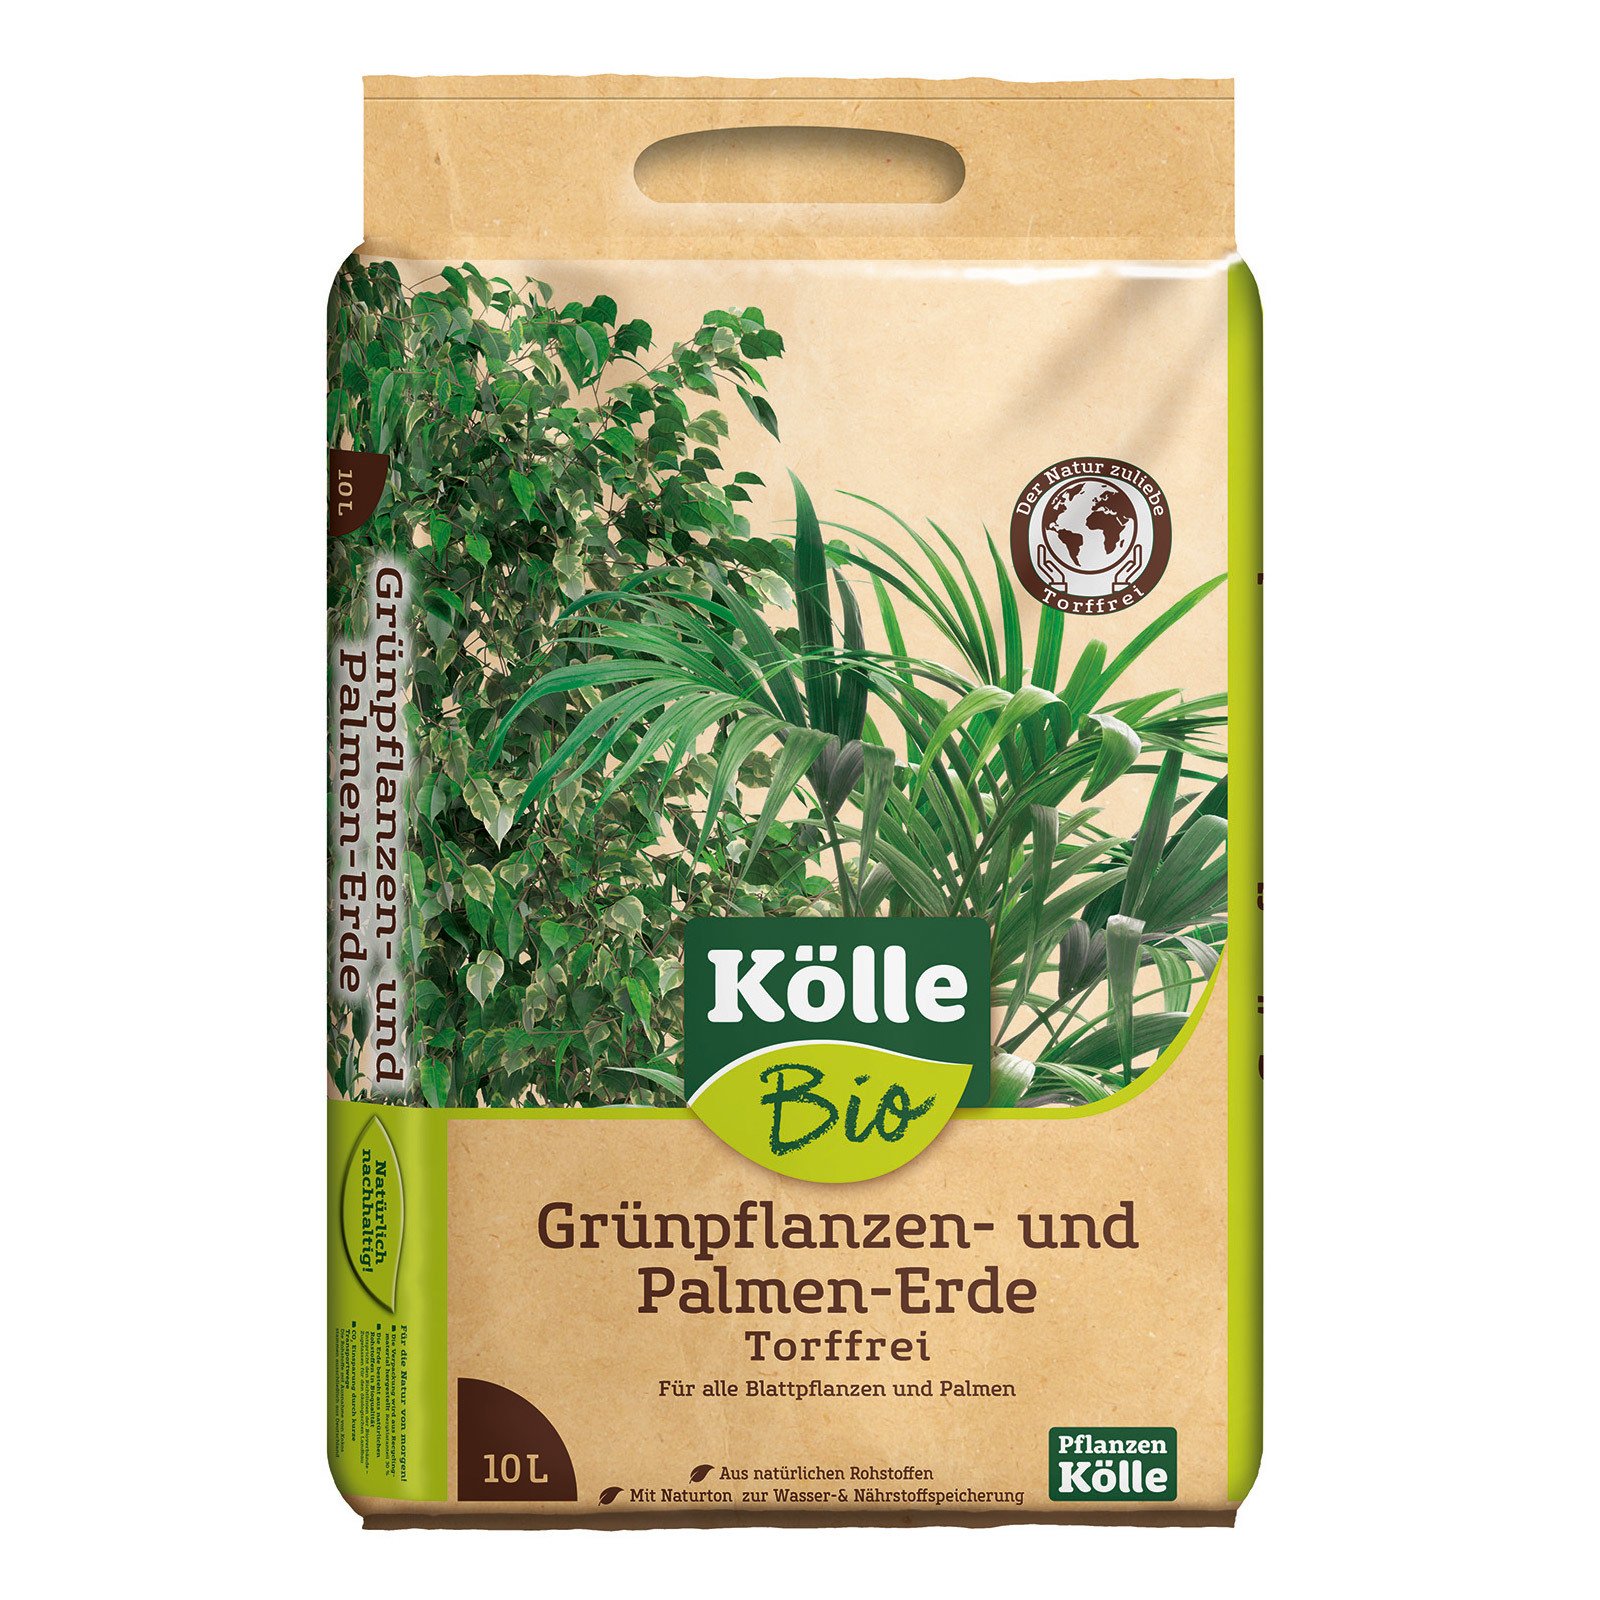 Kölle Bio Grünpflanzen- und Palmenerde Torffrei 10 l